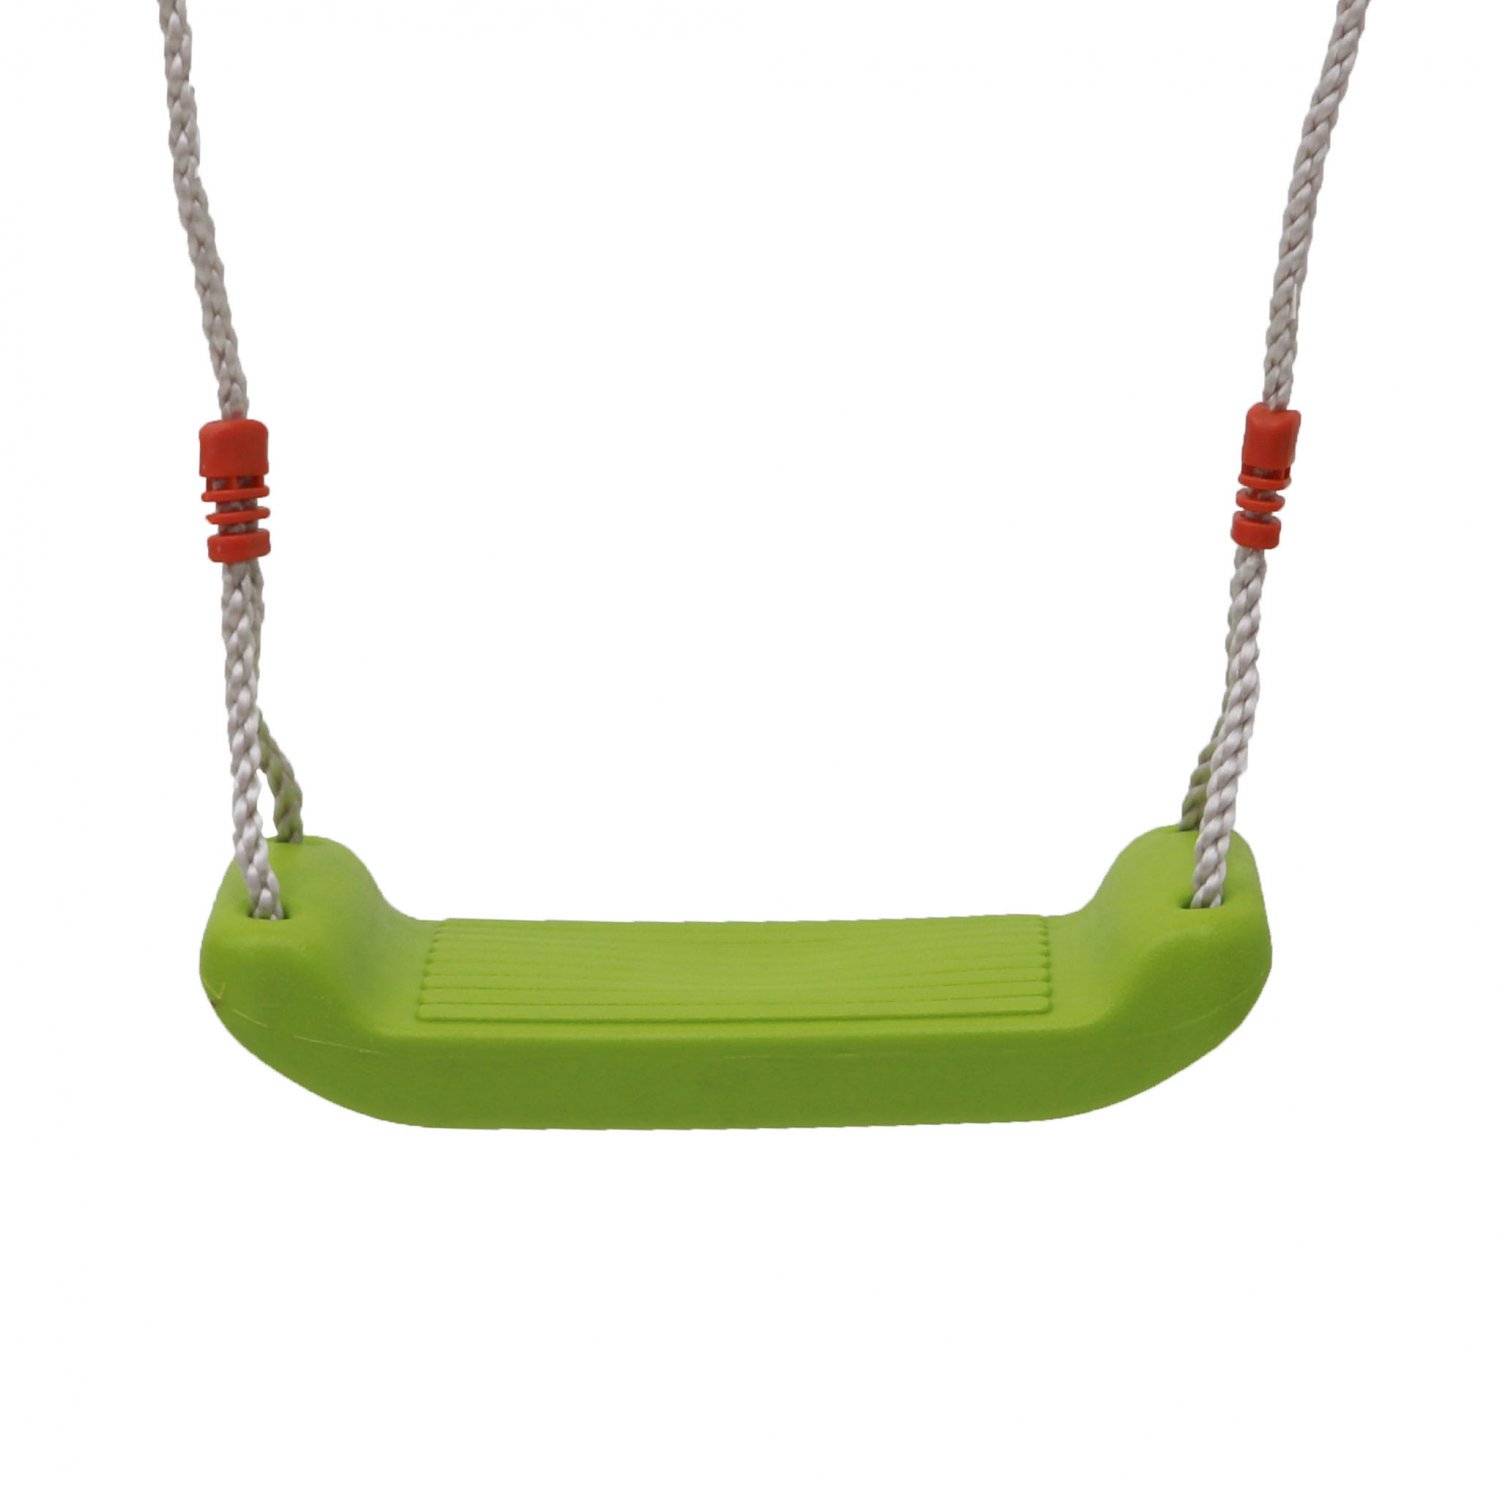 Childrens Outdoor Plastic Adjustable Garden Swing Seat Toy